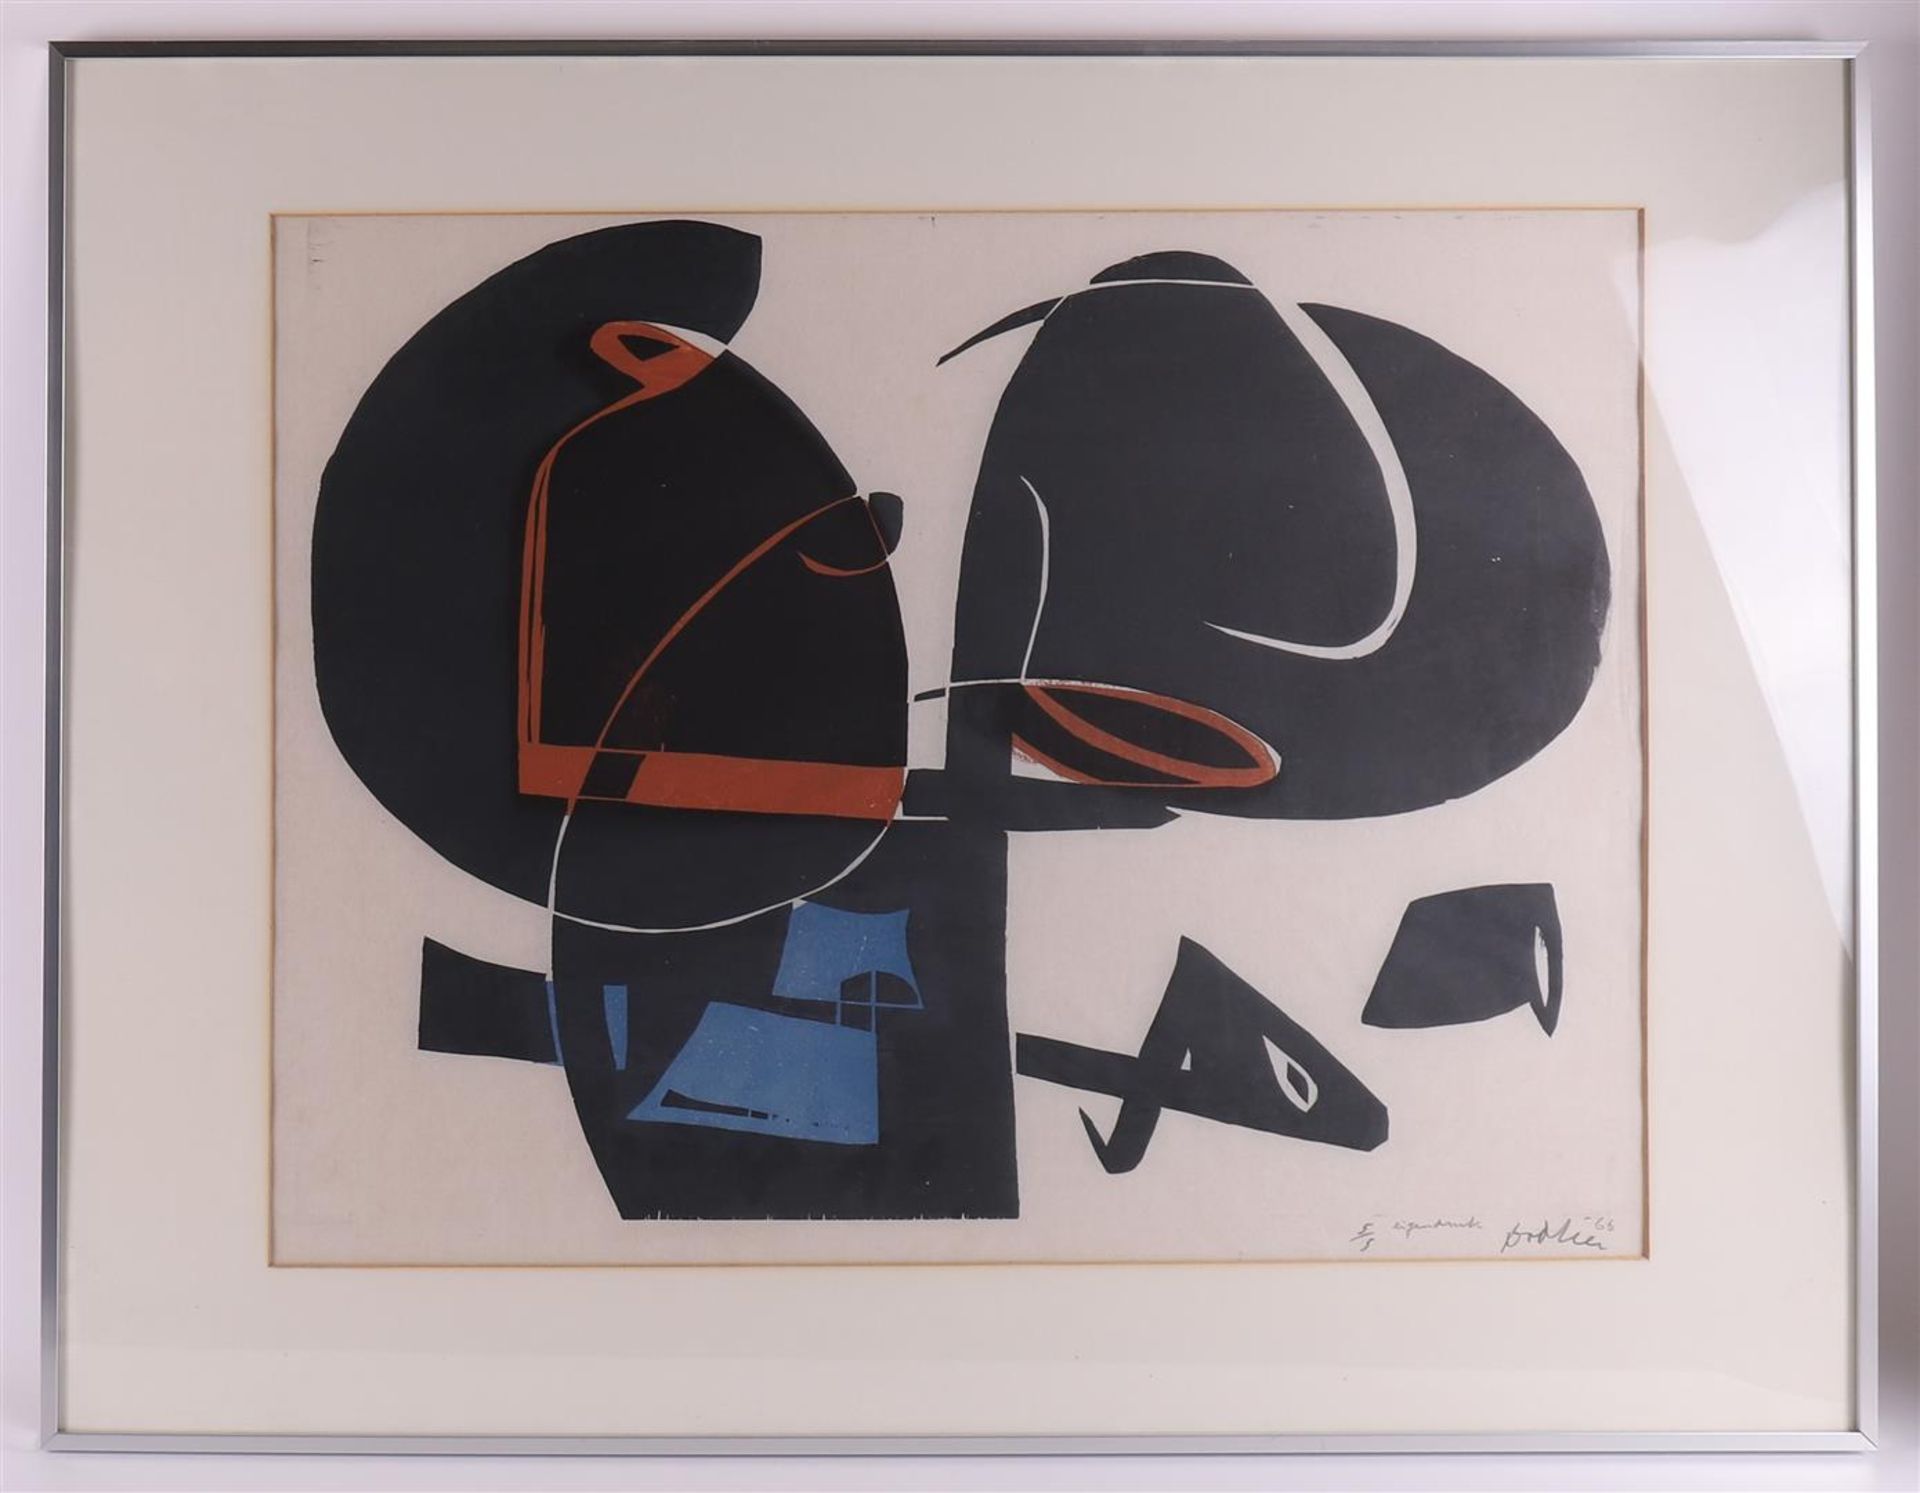 Zee van der, Jan (Leeuwarden 1898-1988) 'Composition',